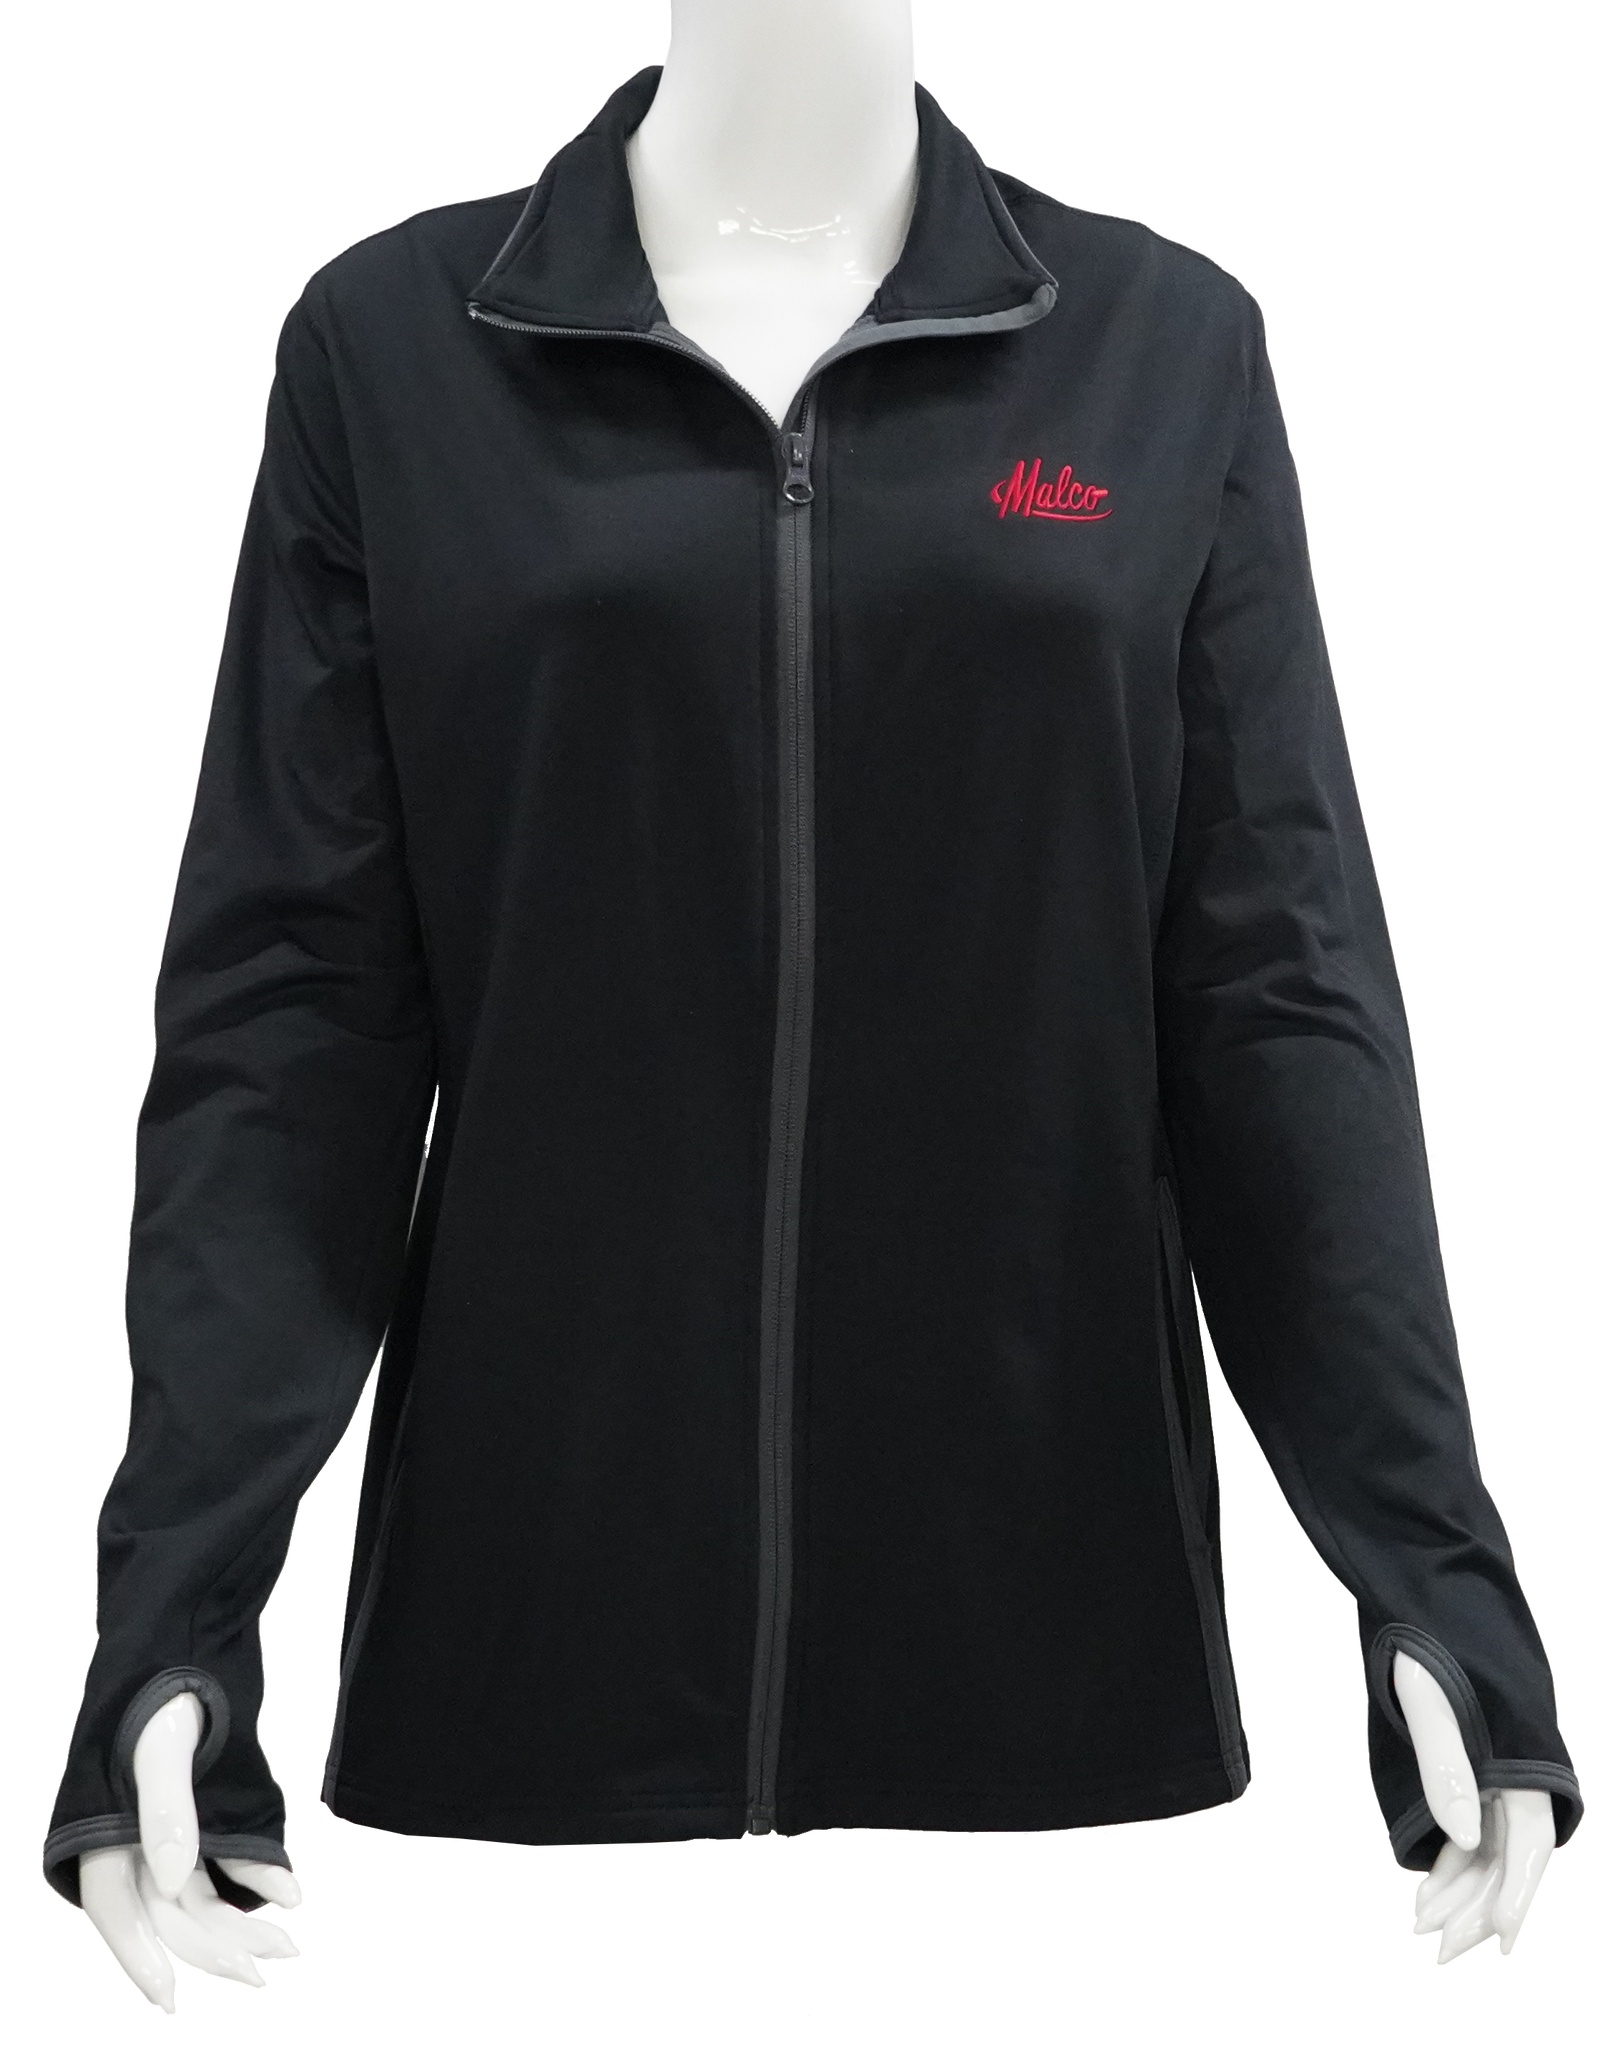 Sport-Tek Ladies Sport-Wick Fleece Full-Zip Jacket, Product